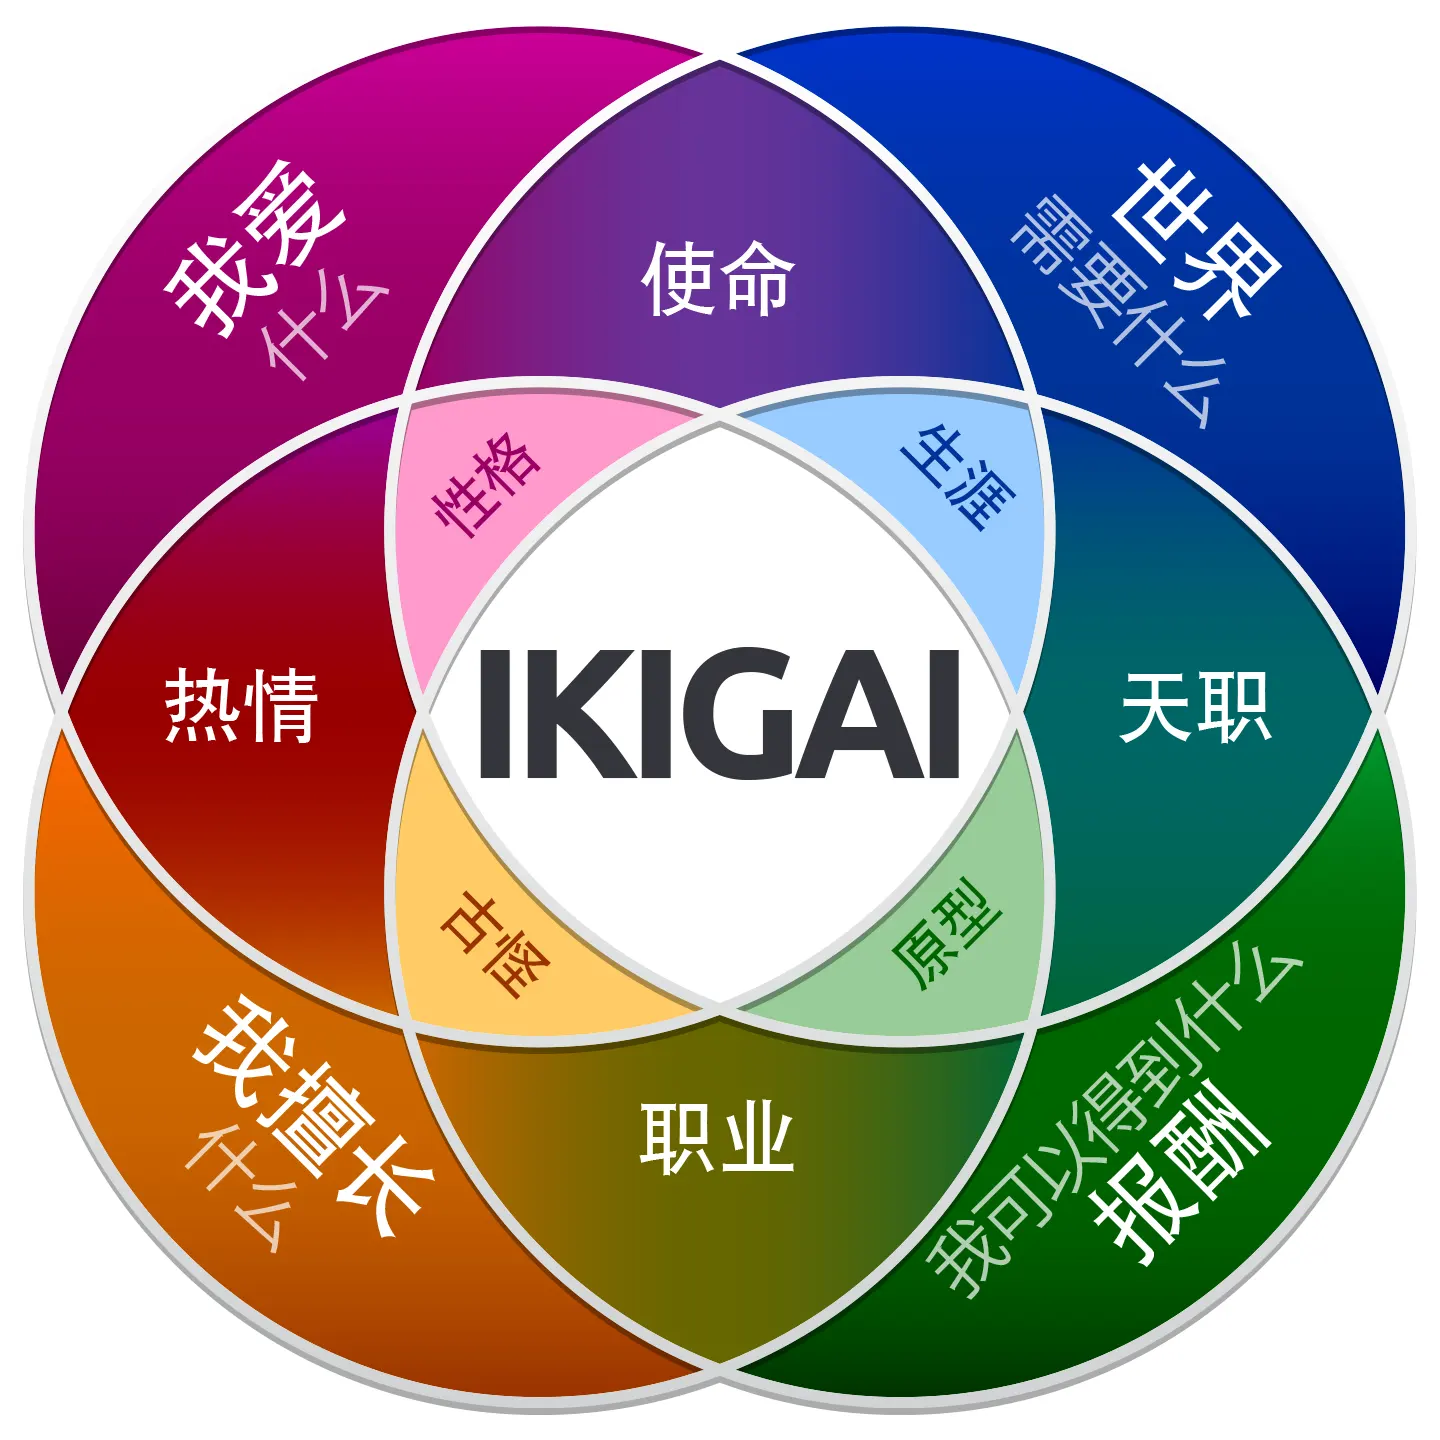 ikigai 是什么意思